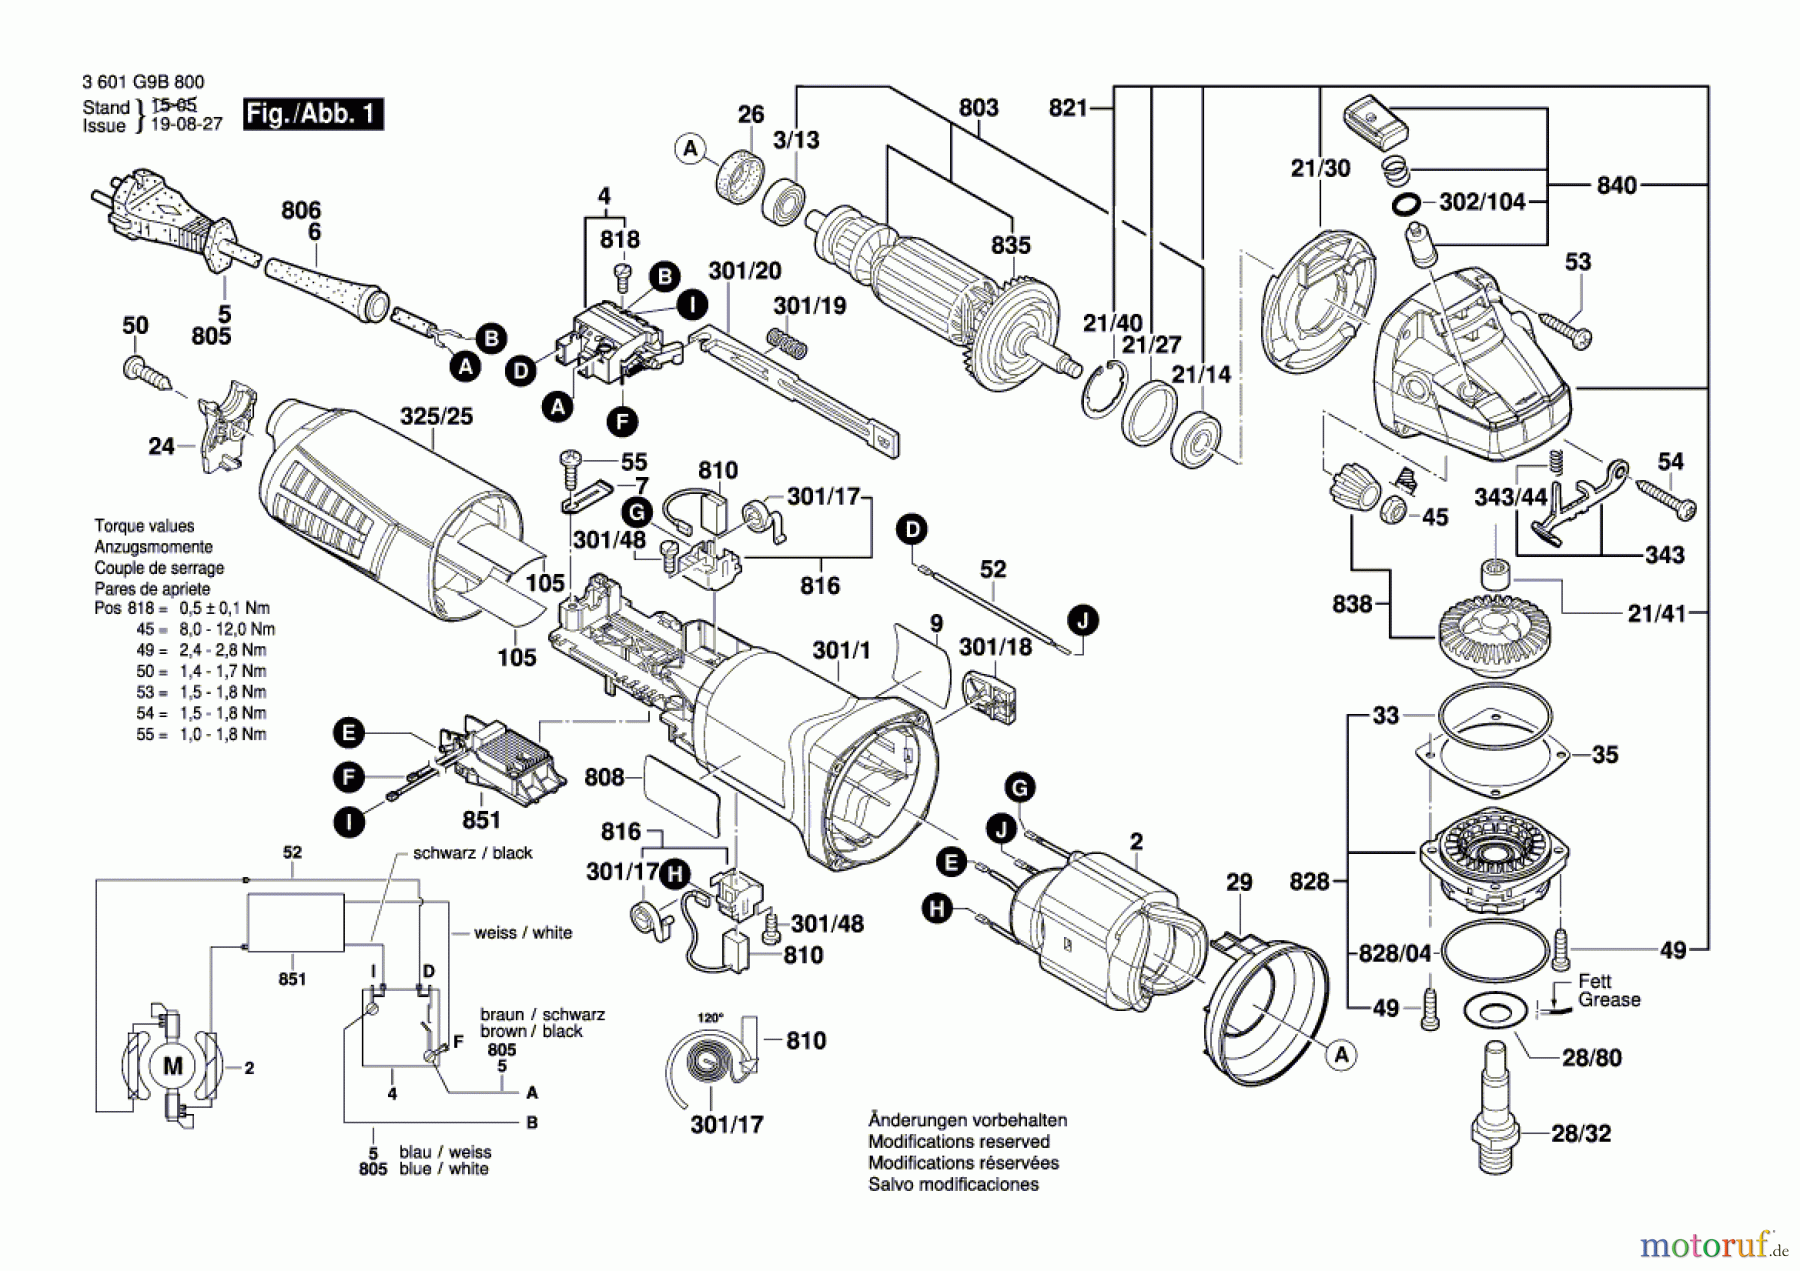  Bosch Werkzeug Winkelschleifer BAG 115-2 Seite 1